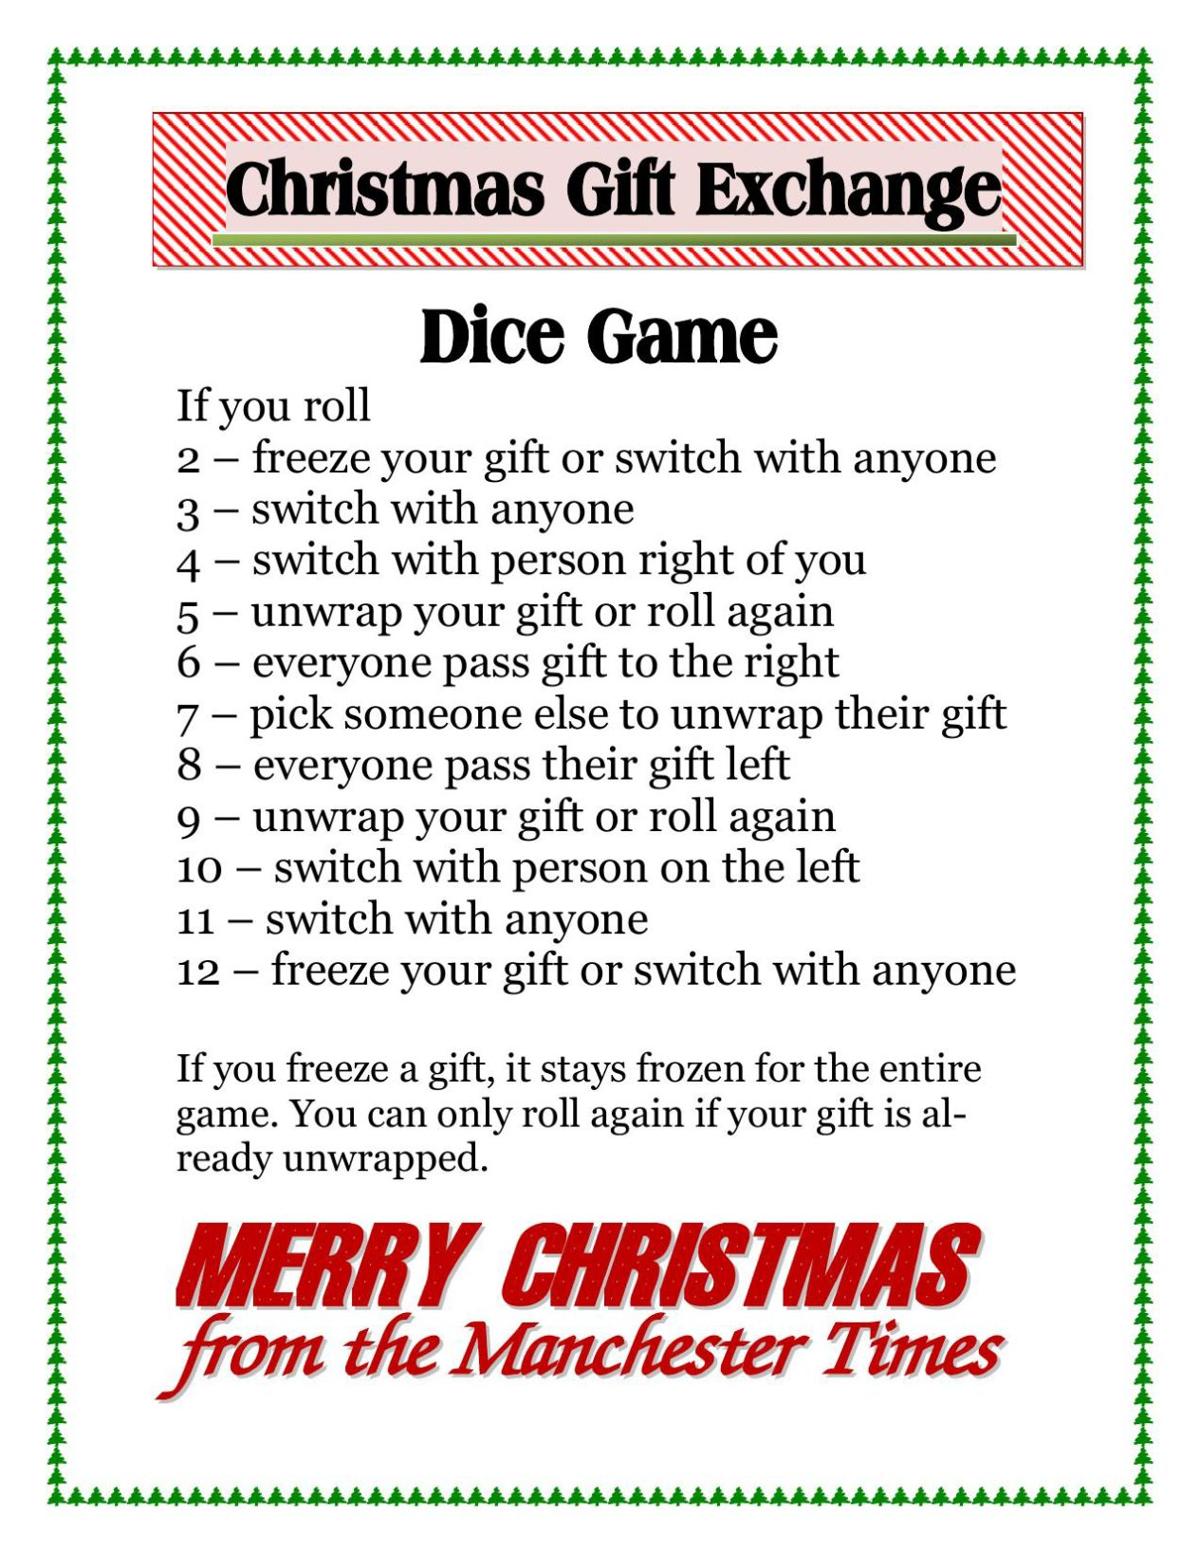 christmas-dice-game-gift-exchange-rules-printable